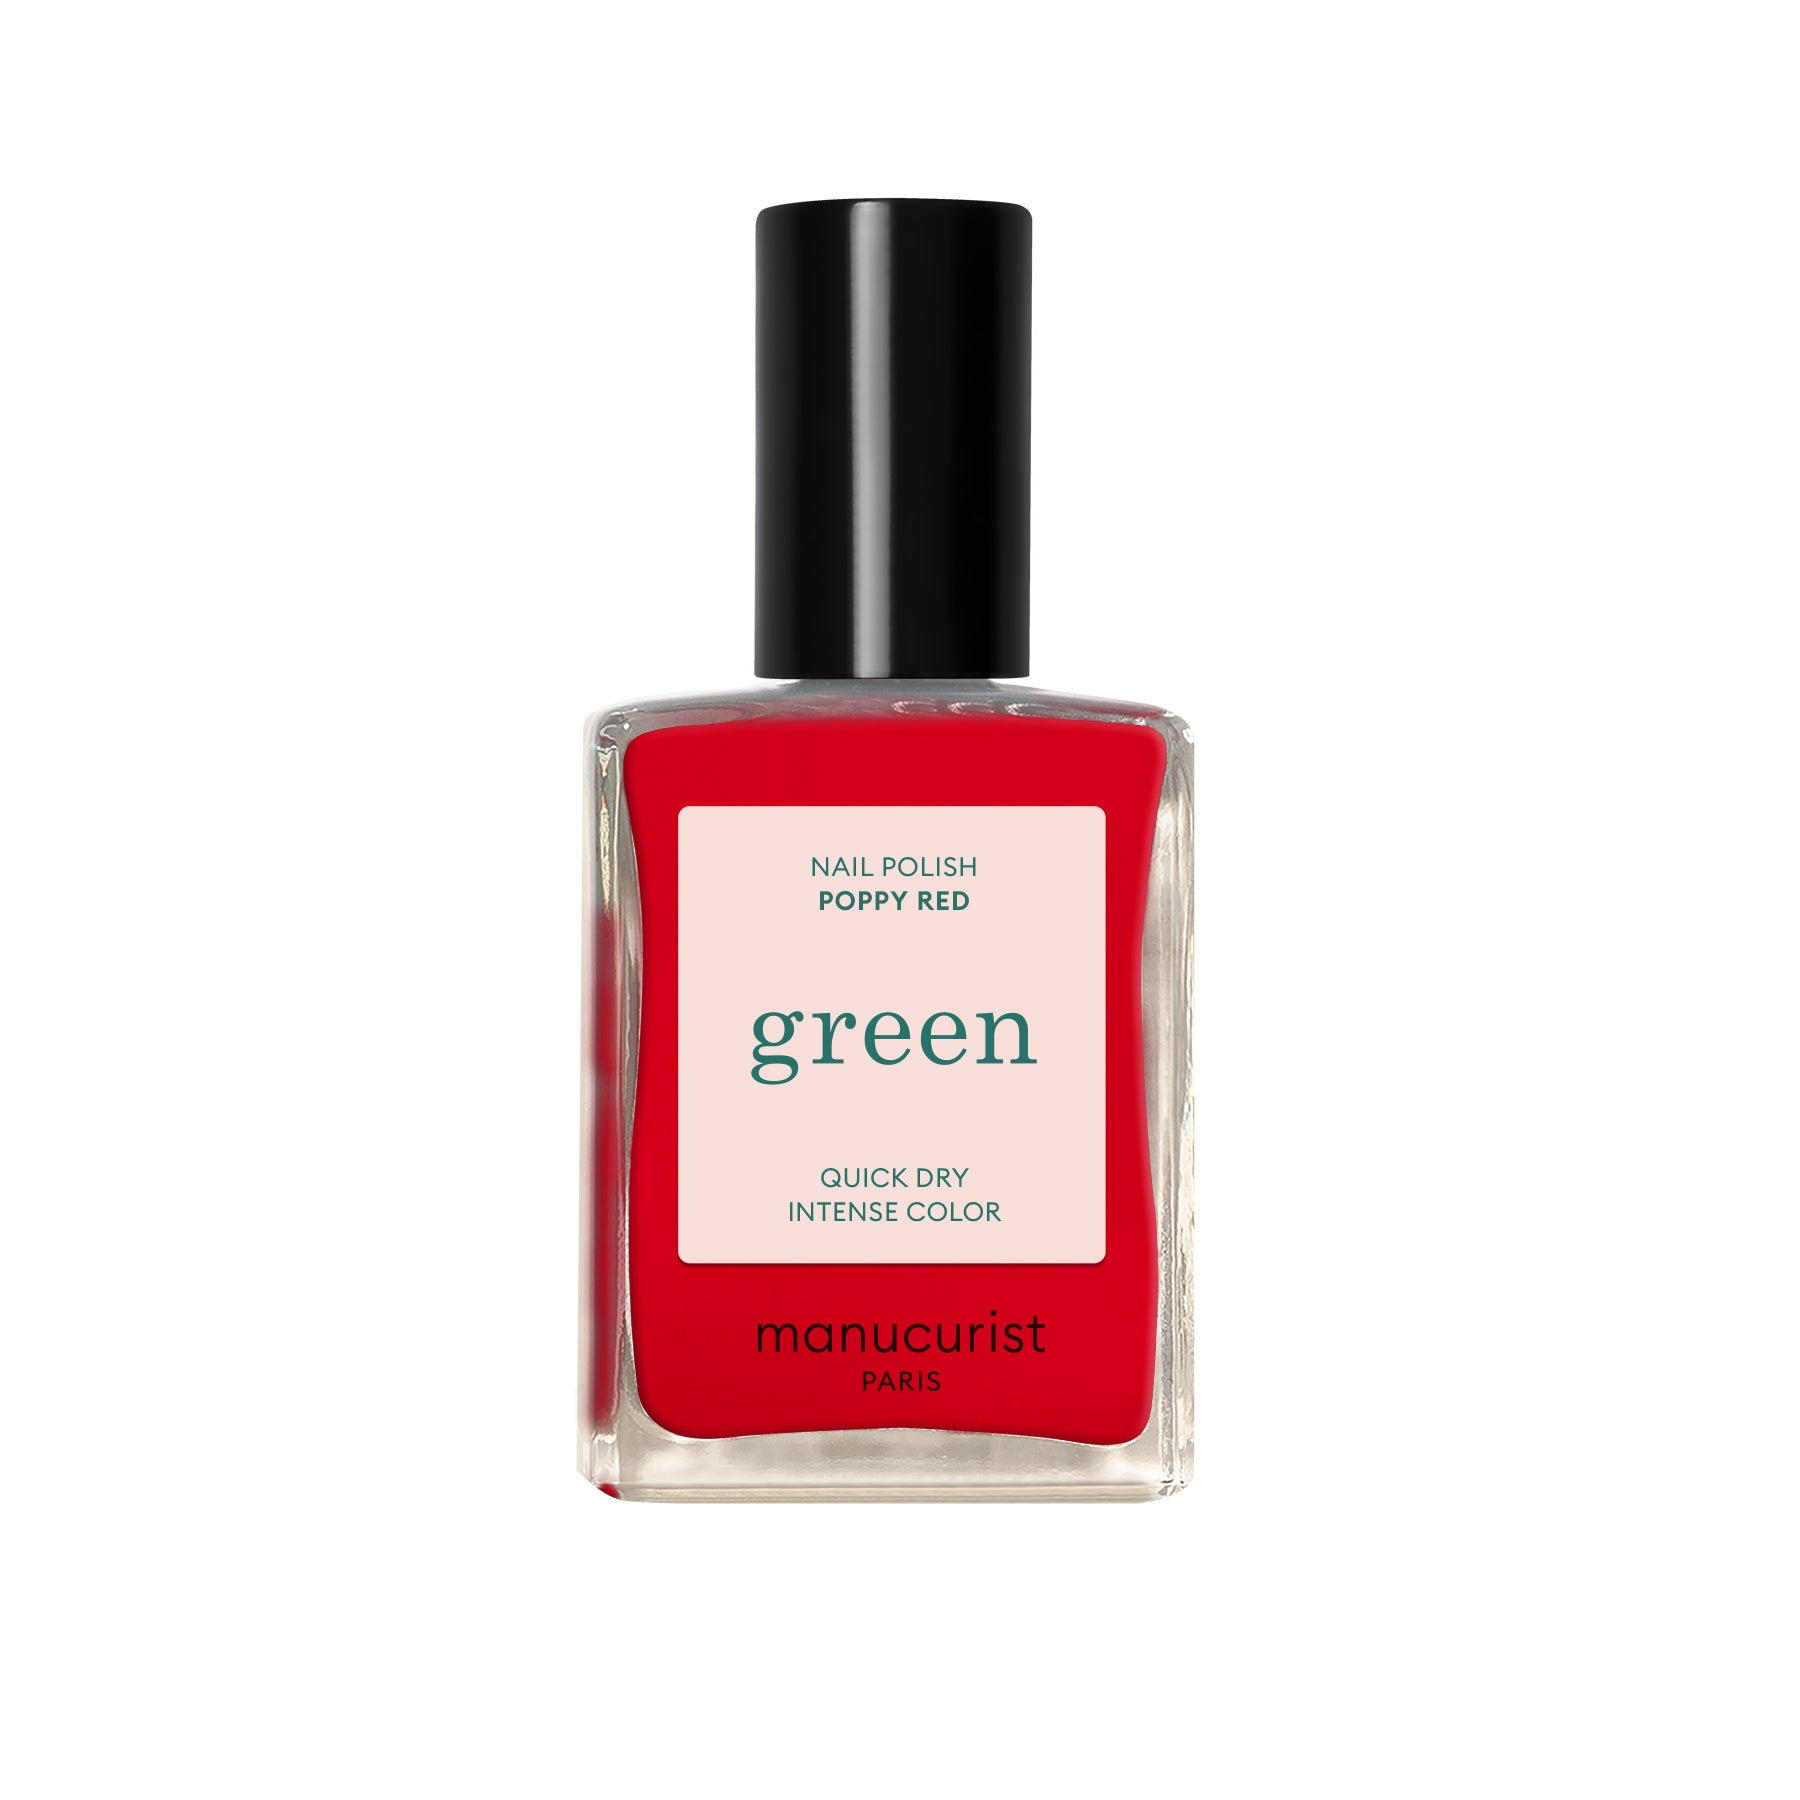 Manucurist Green lak na nehty - Poppy Red (15 ml) - výrazná červeň vlčích máků Manucurist